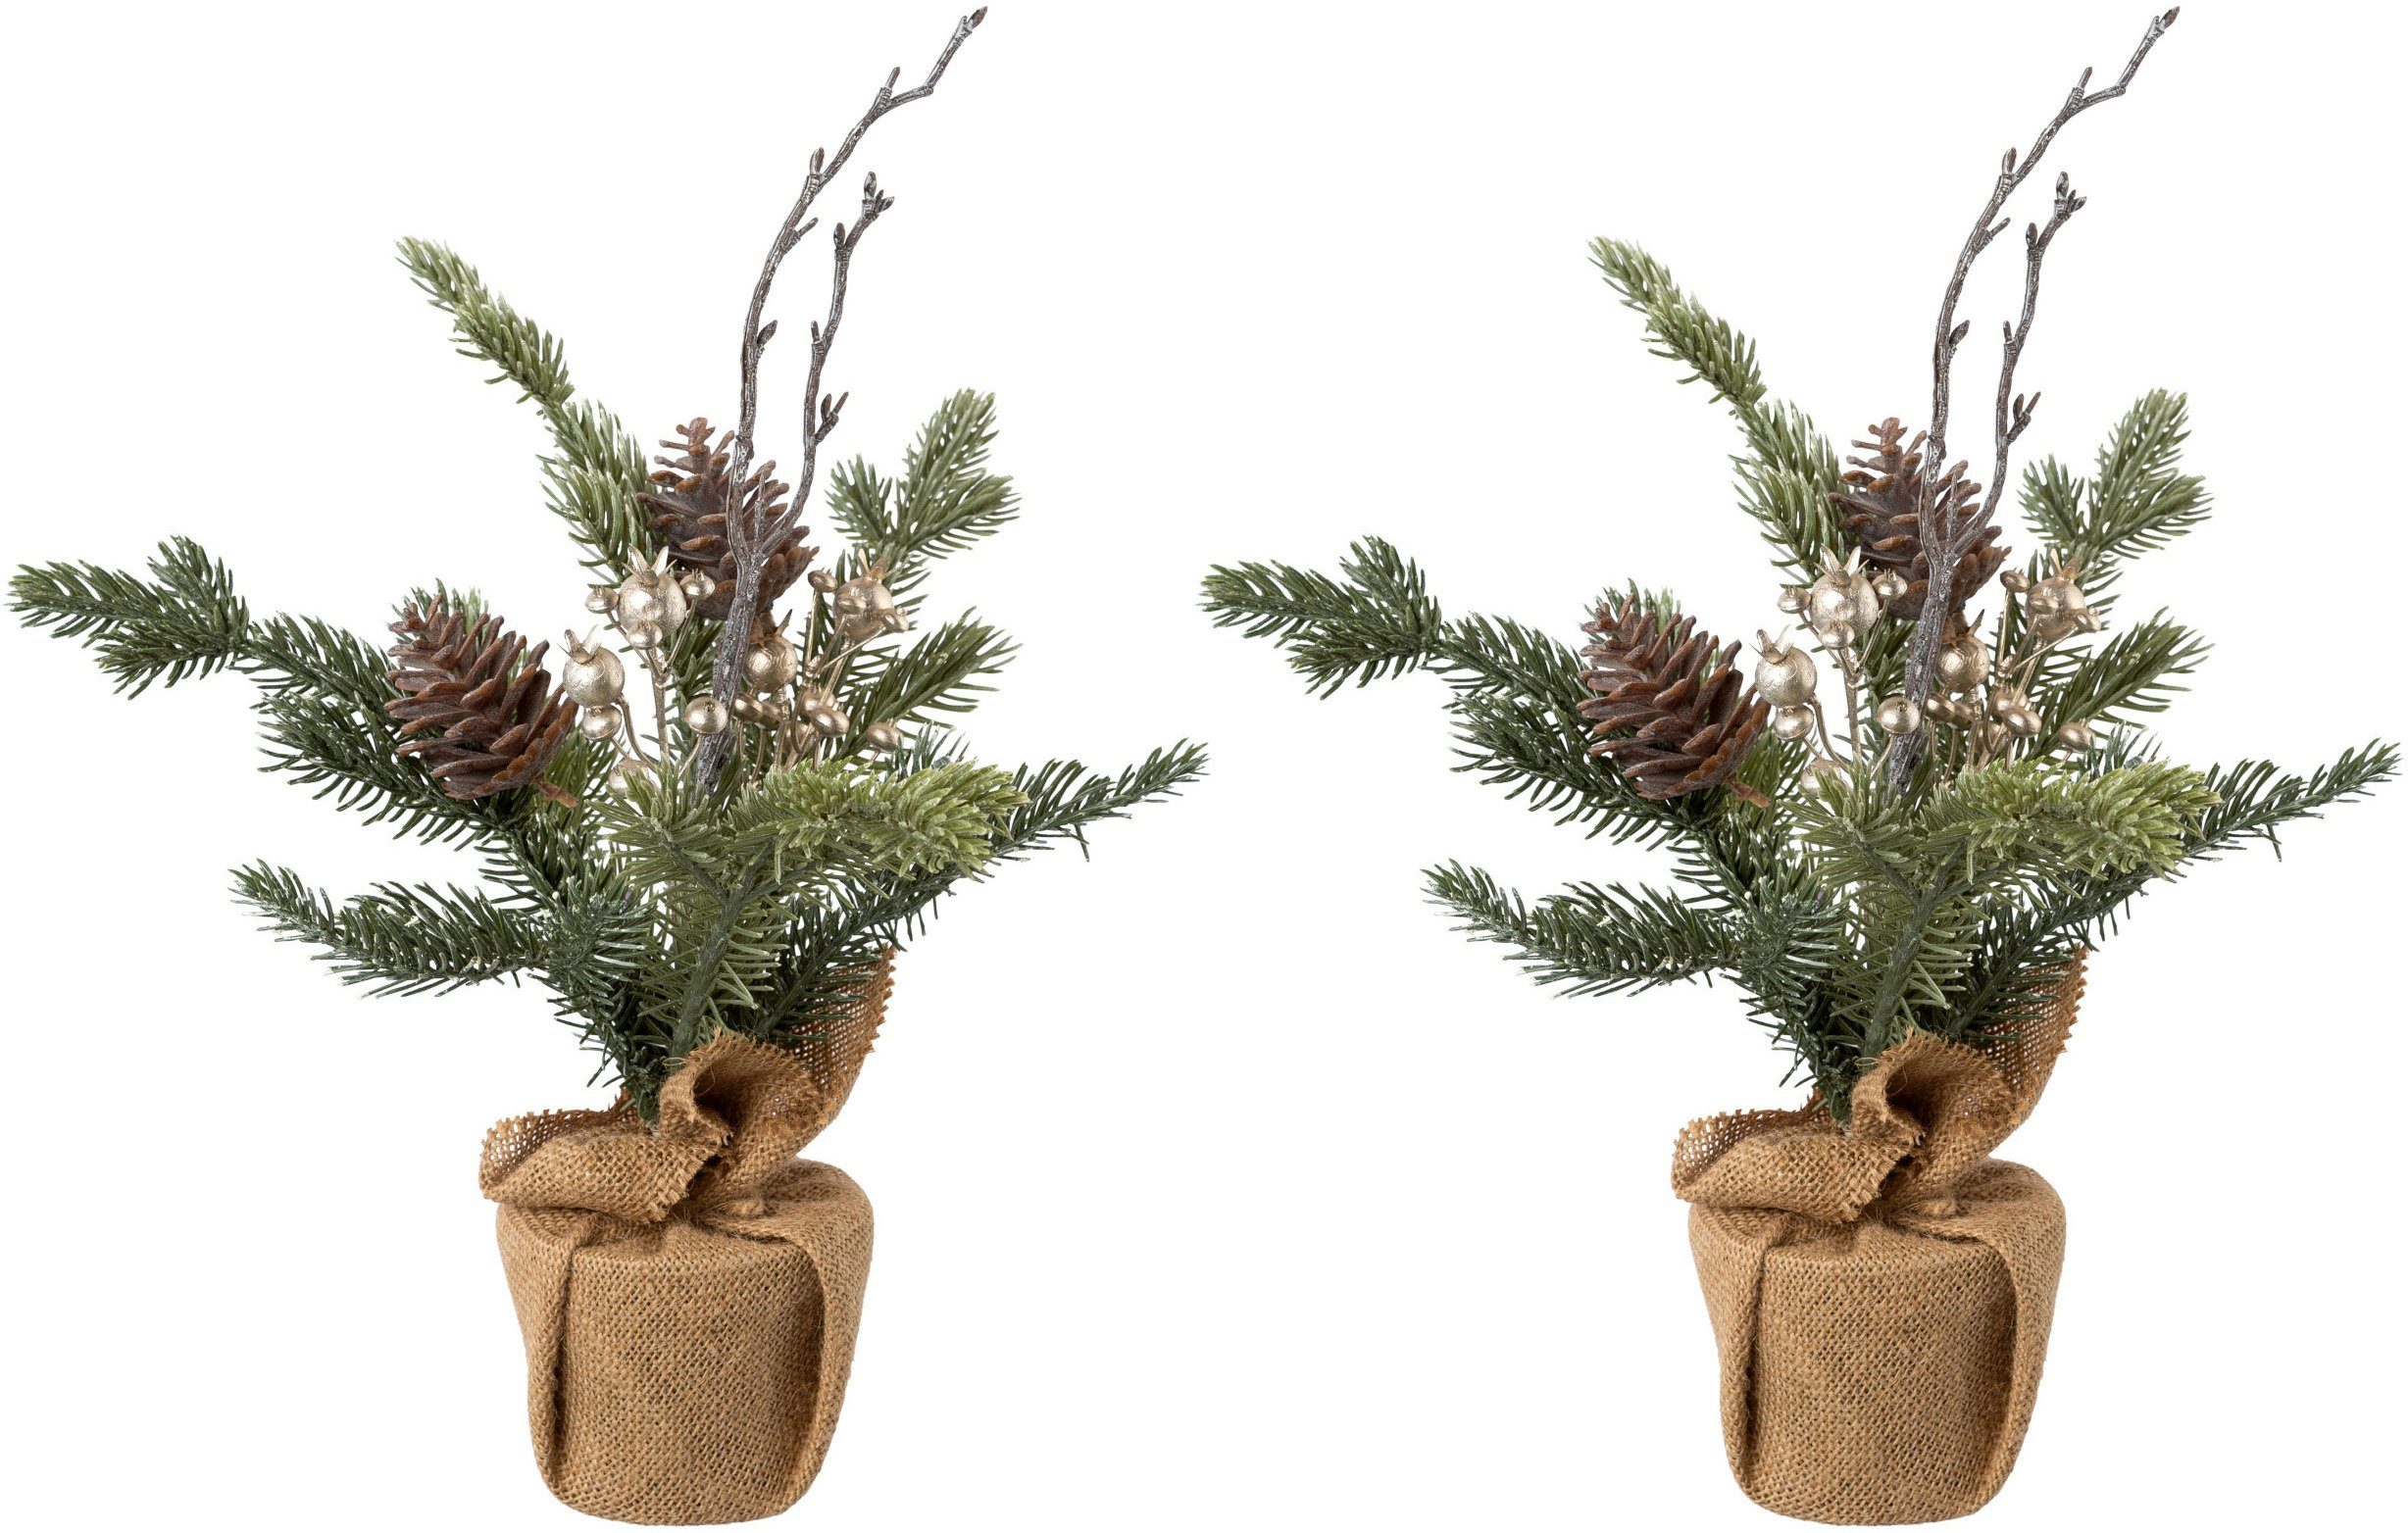 Creativ green Künstlicher Weihnachtsbaum Weihnachtsdeko, künstlicher Christbaum, Tannenbaum, im Jutesäckchen | Künstliche Weihnachtsbäume